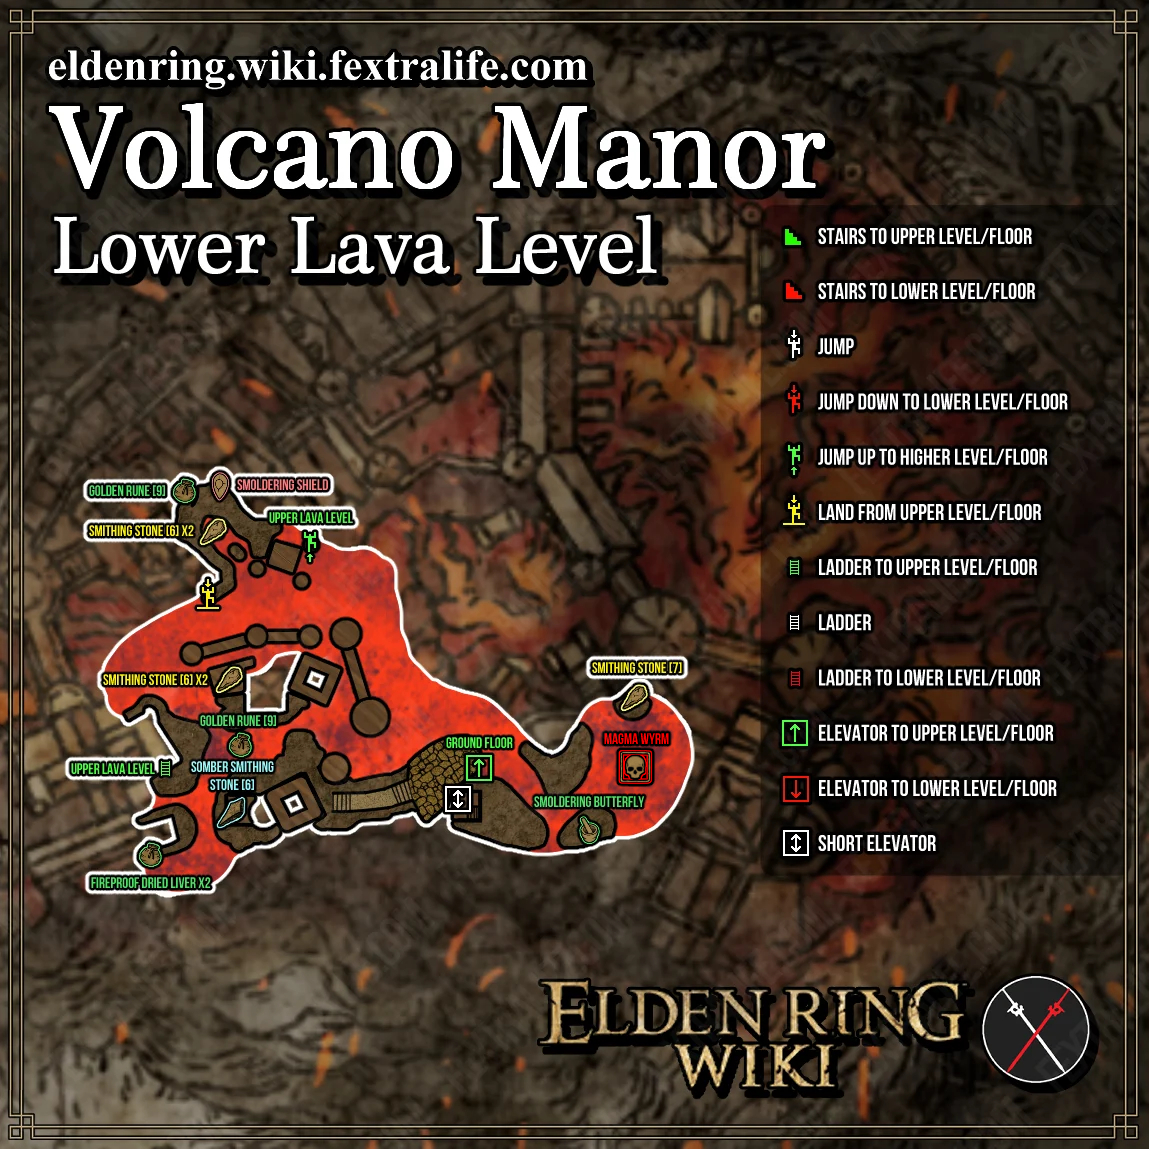 Blue lava - Wikipedia